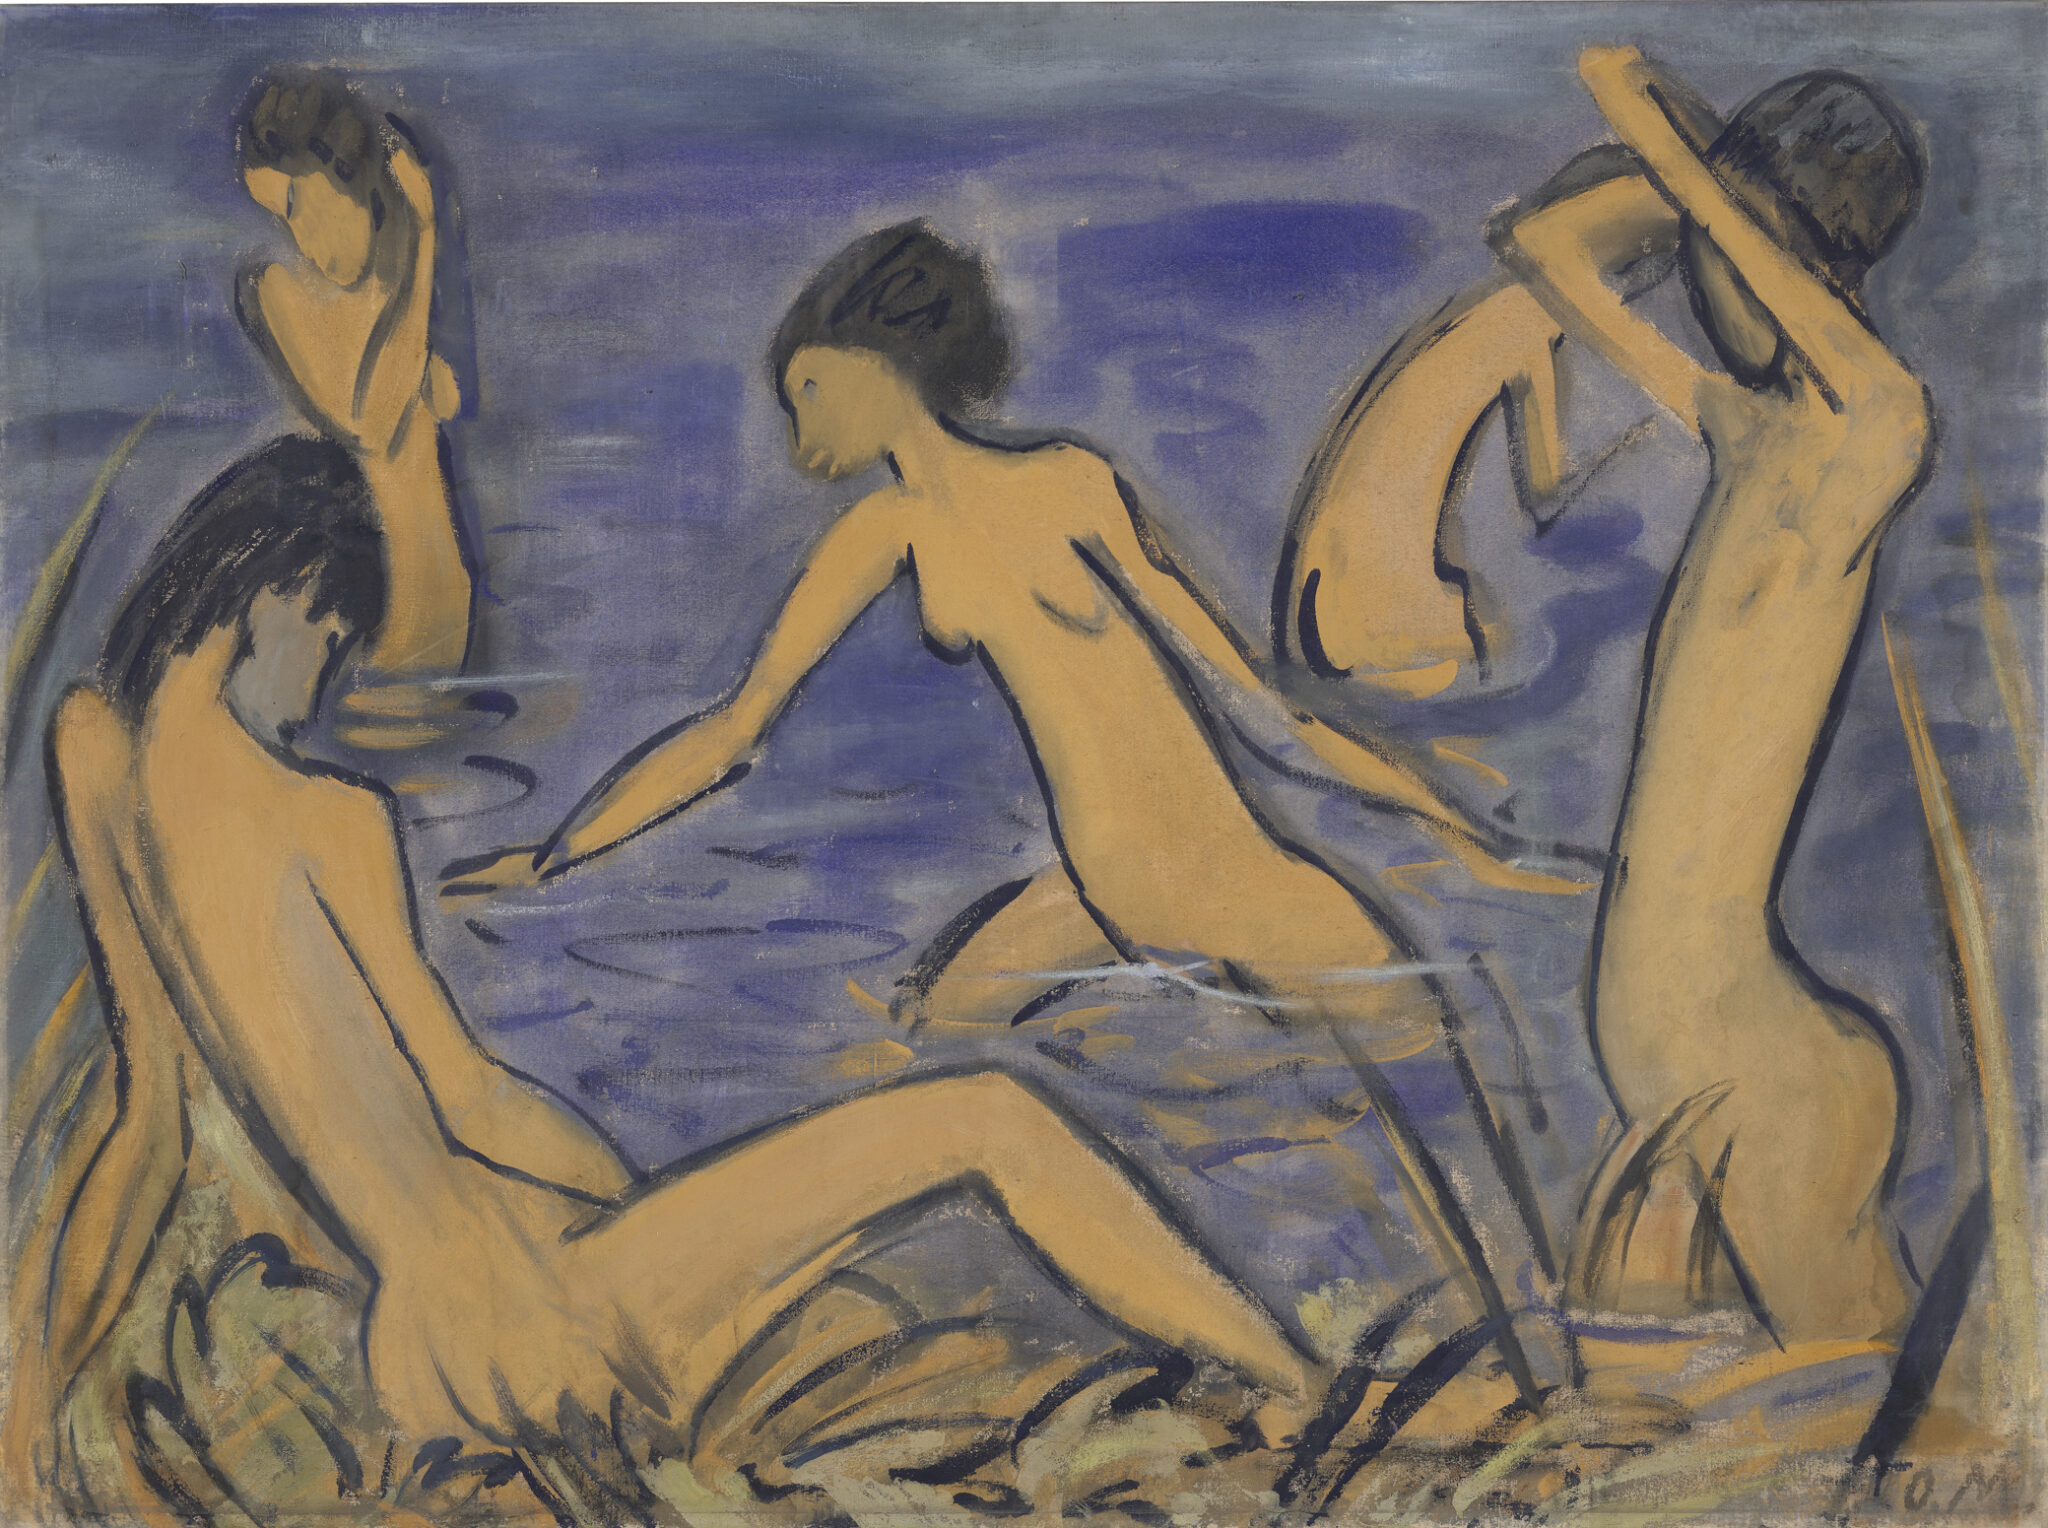 Fünf nackte, androgyn wirkende Menschen bewegen sich am Wasser. Zwei sitzen oder stehen am Ufer, während drei im Wasser baden. Die Menschen sind aus verschiedenen Perspektiven dargestellt.